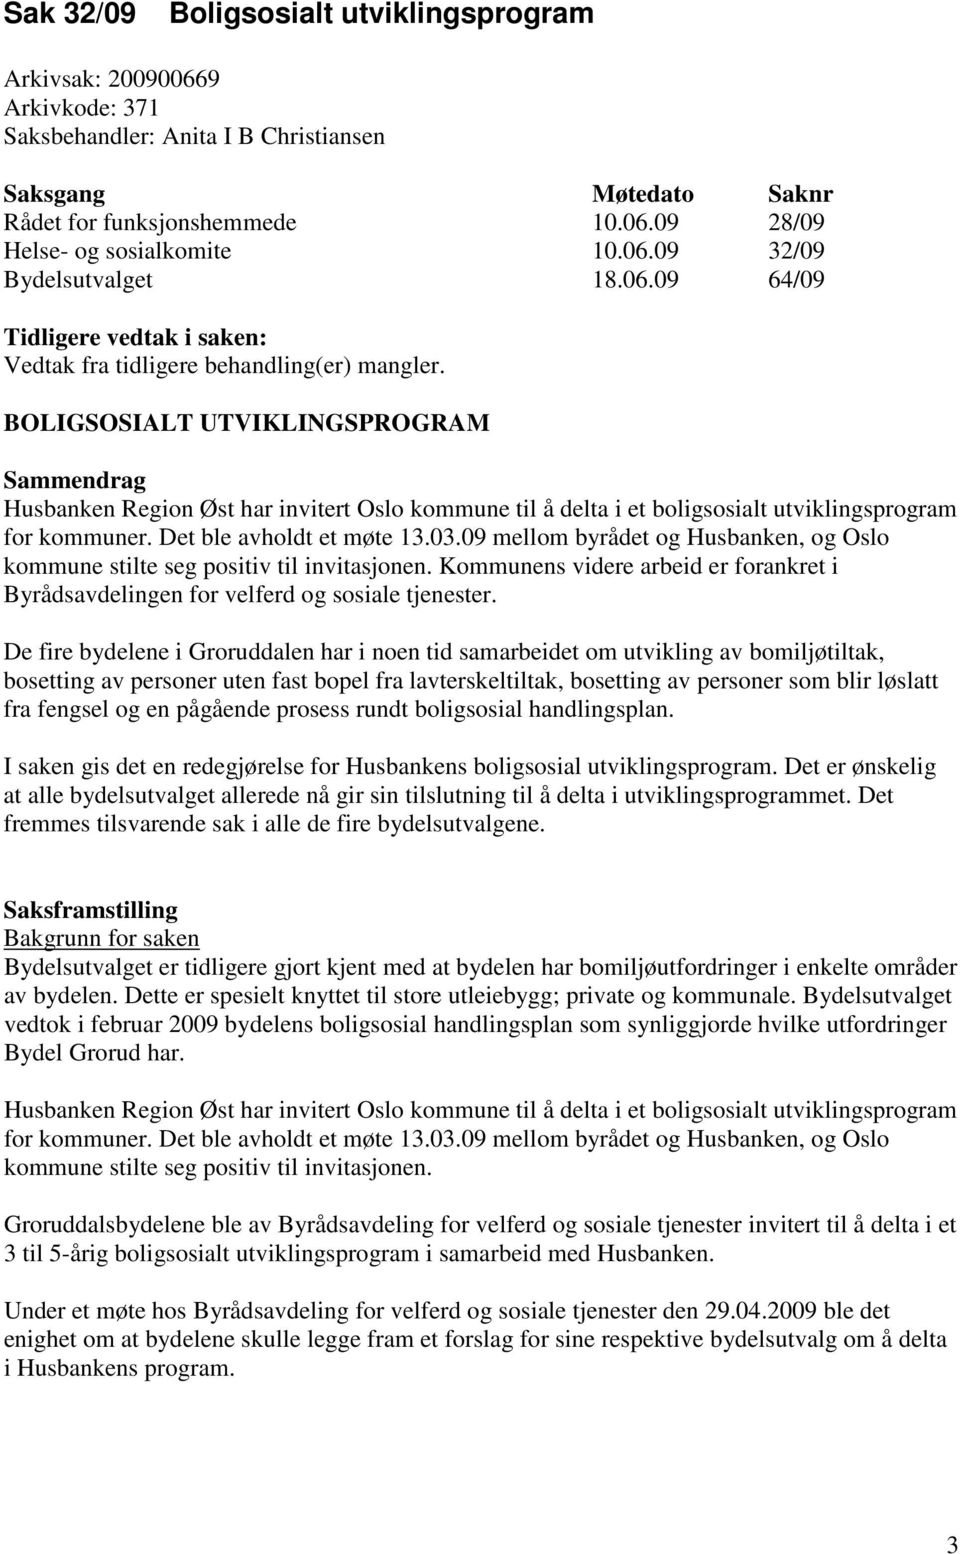 BOLIGSOSIALT UTVIKLINGSPROGRAM Sammendrag Husbanken Region Øst har invitert Oslo kommune til å delta i et boligsosialt utviklingsprogram for kommuner. Det ble avholdt et møte 13.03.